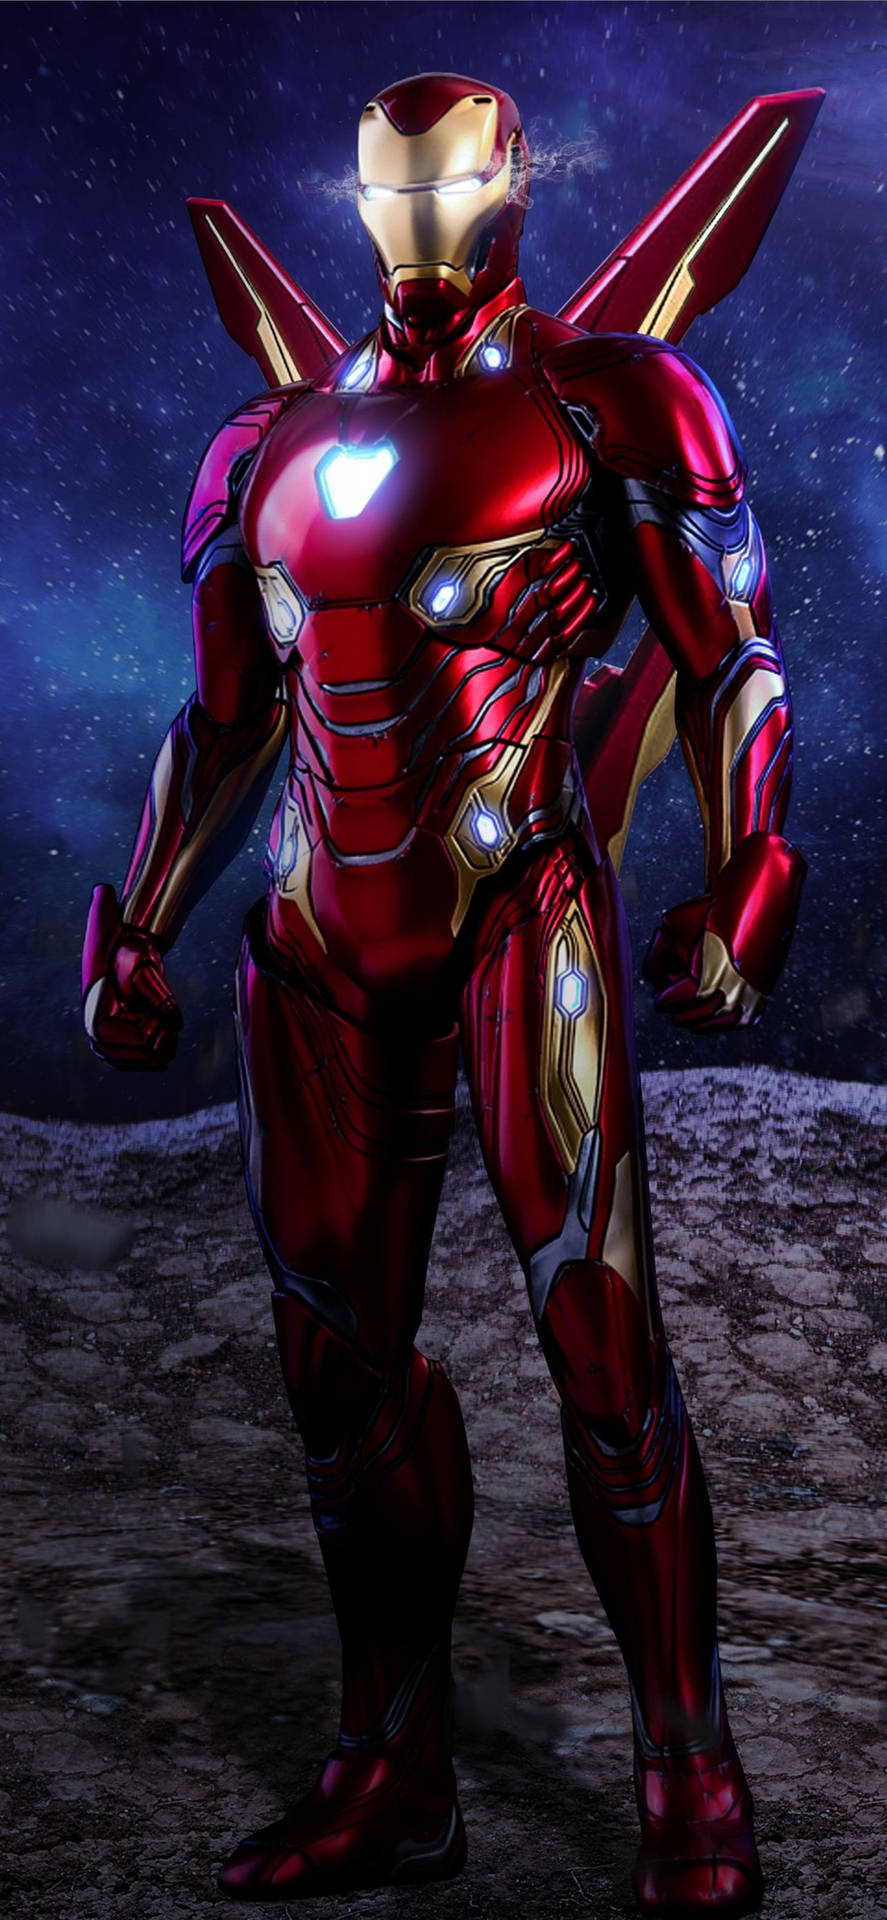 Iron Man Superhero Winged Suit Wallpaper